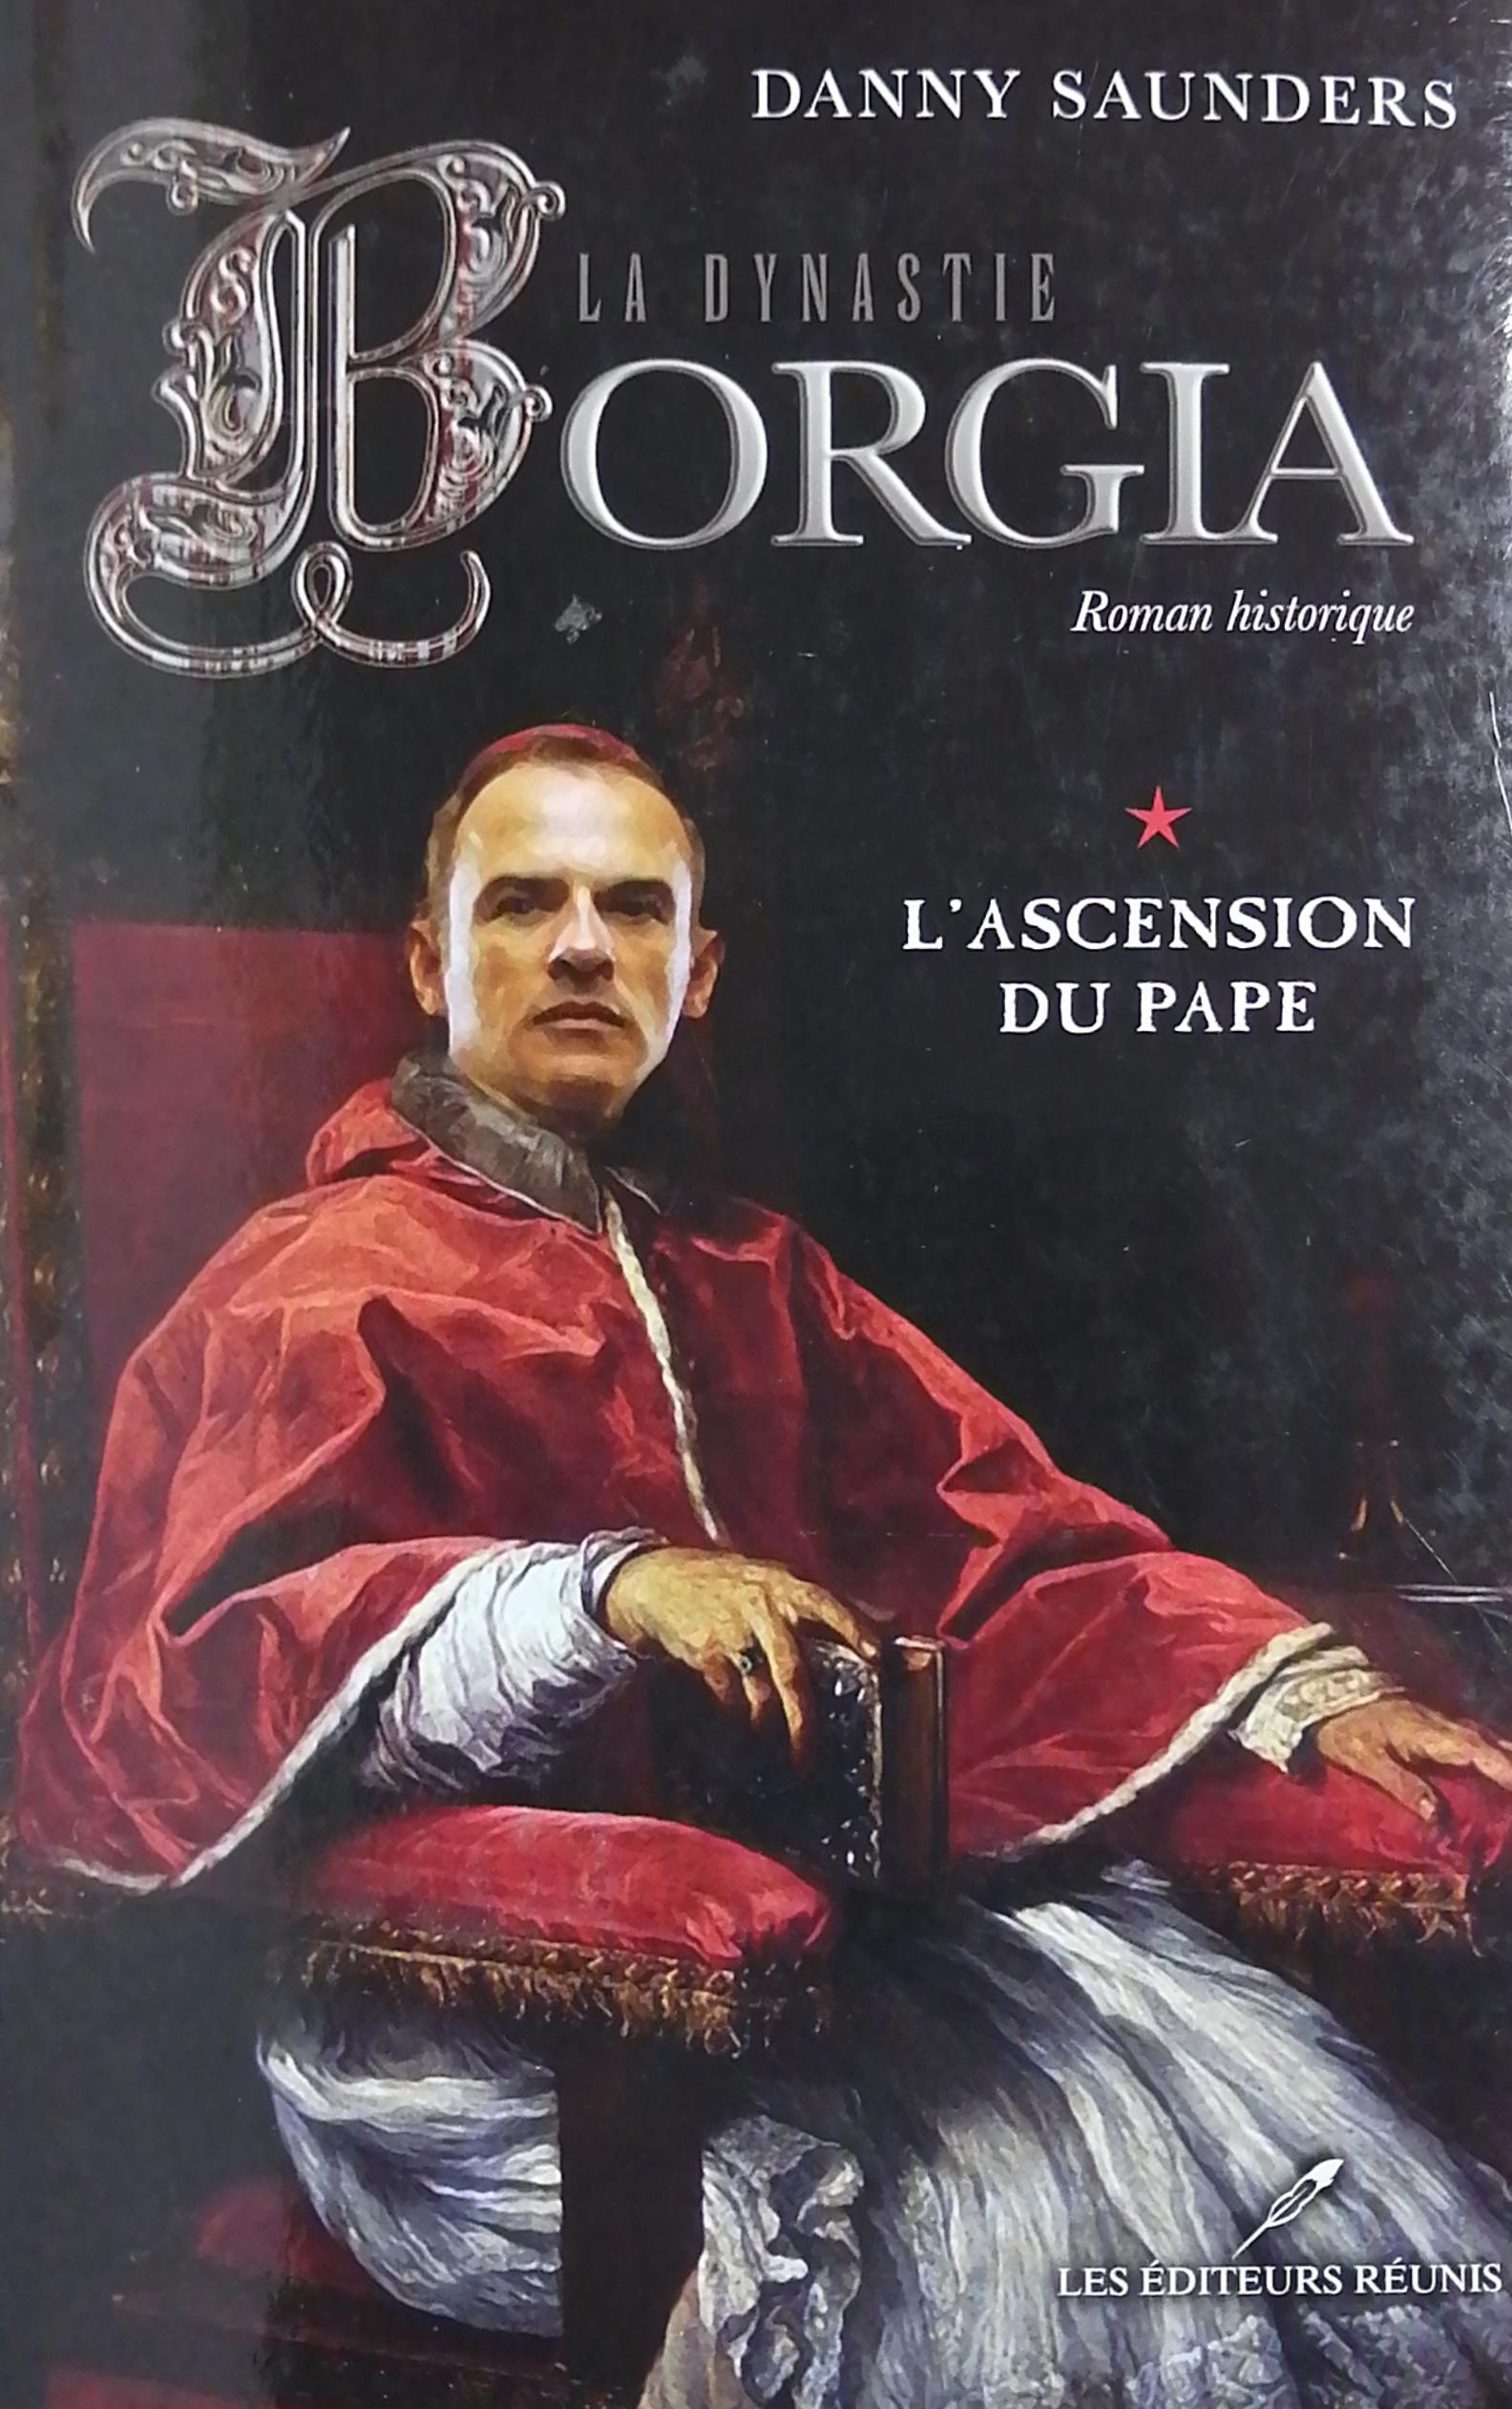 La dynastie Borgia Tome 1 : L’ascension du pape Danny Saunders